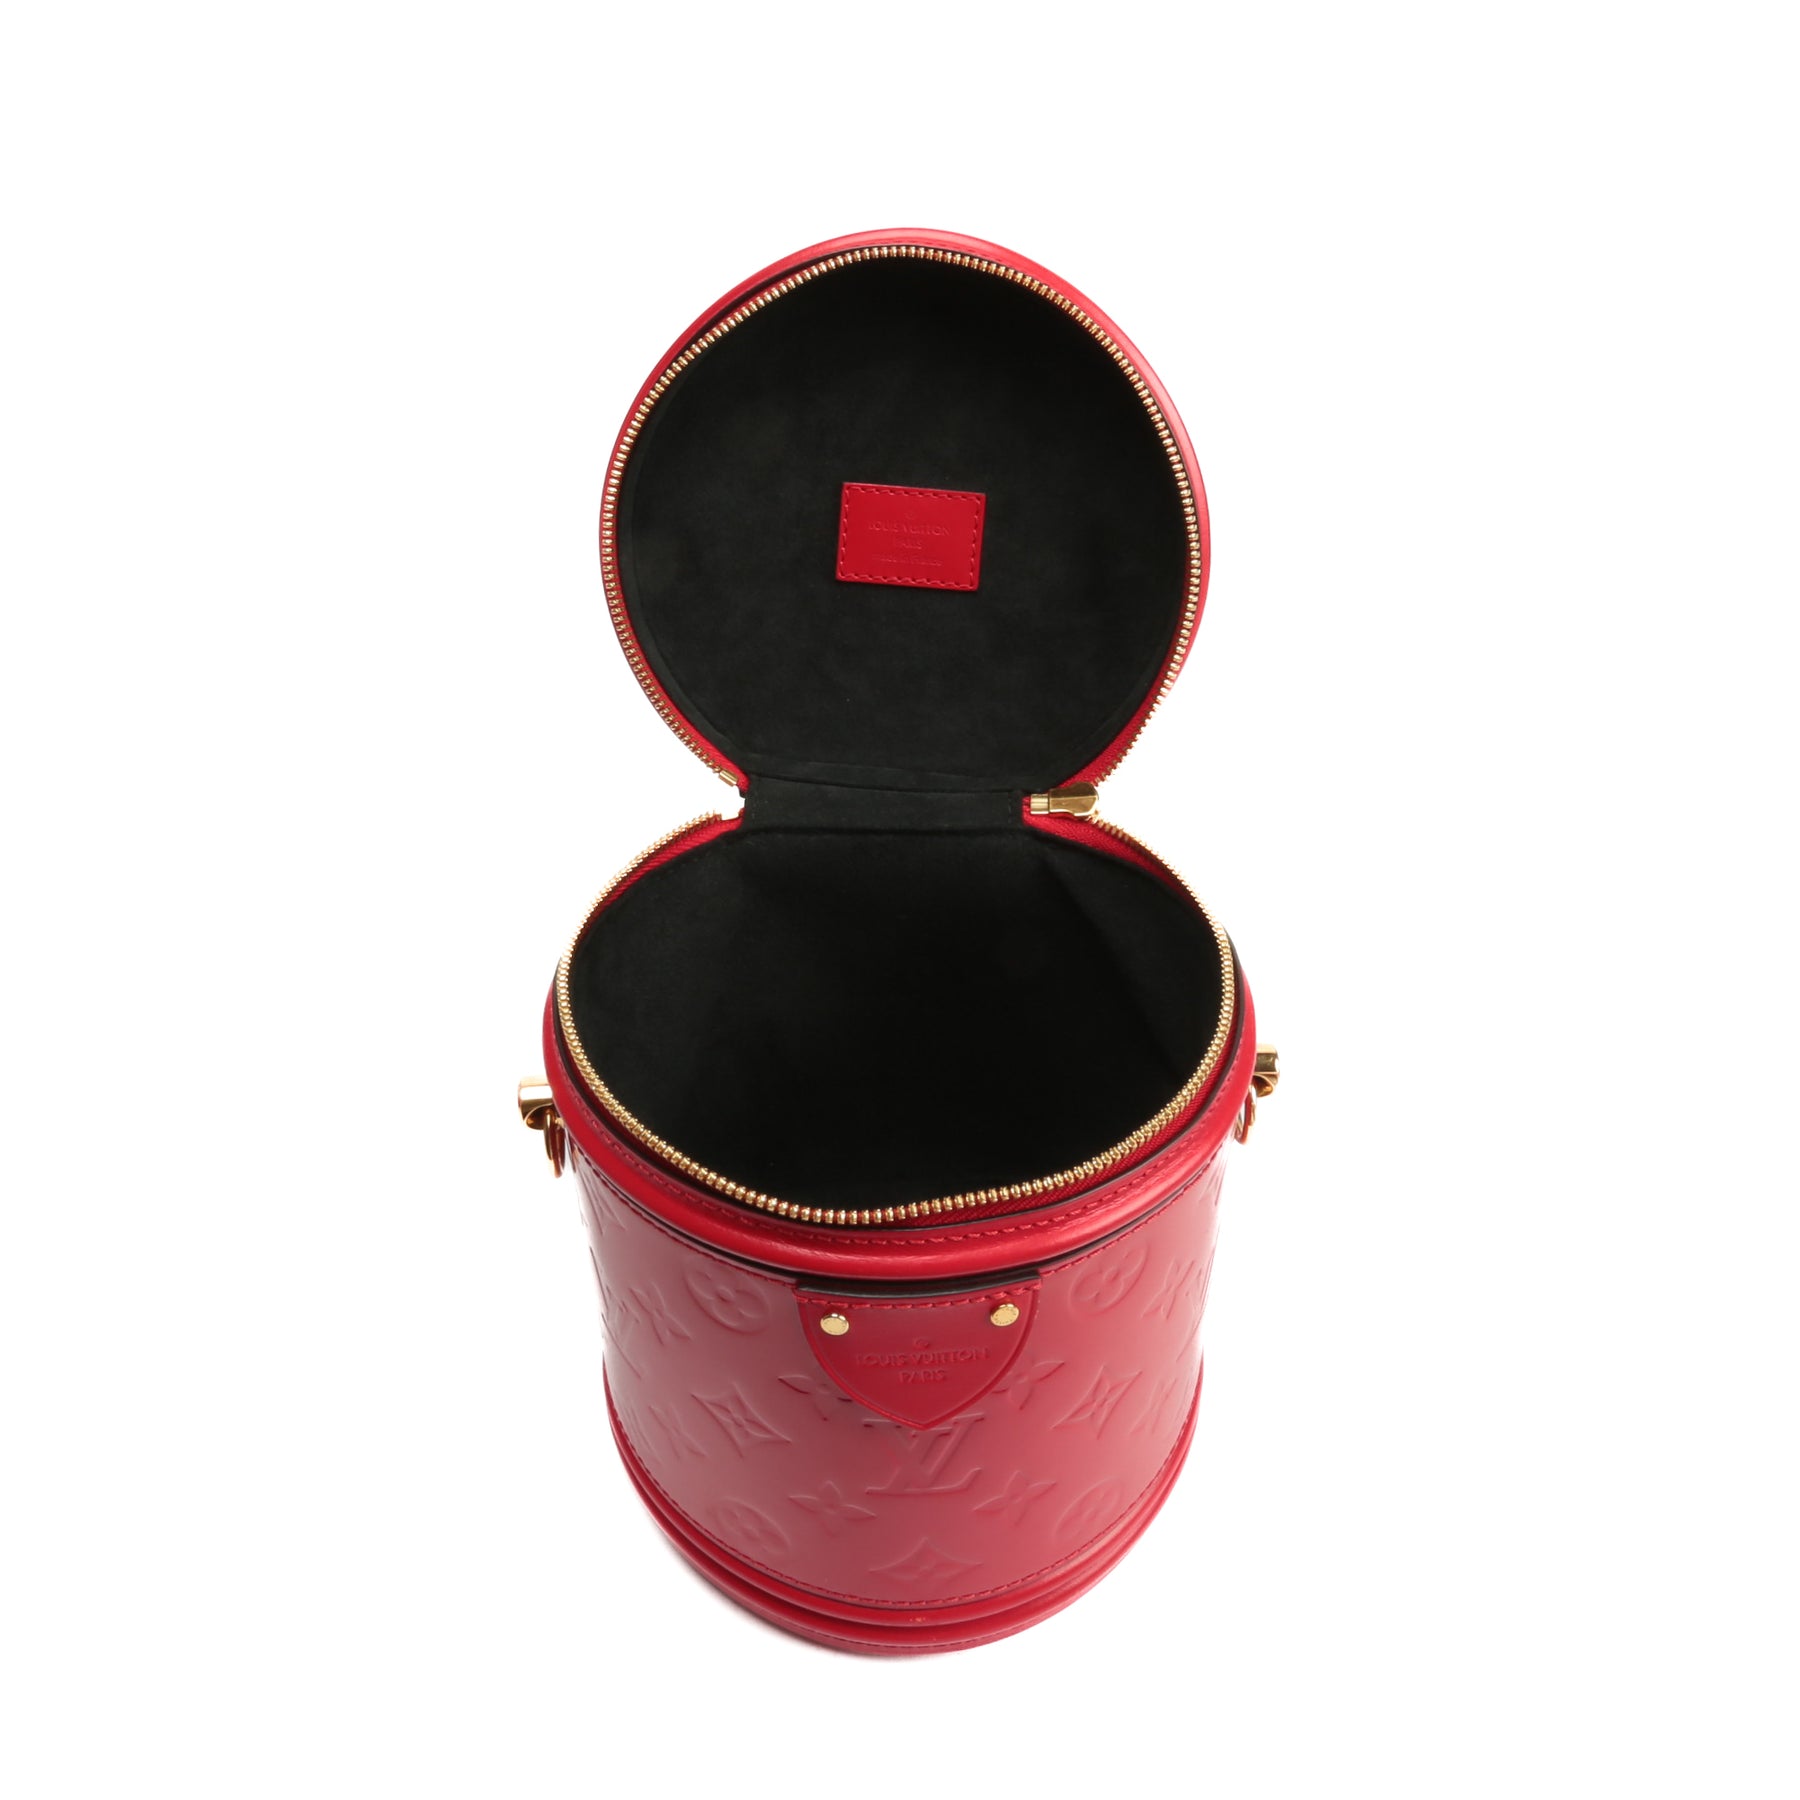 Louis Vuitton Red Monogram Vernis Vanity GM QJA05F3AR3001